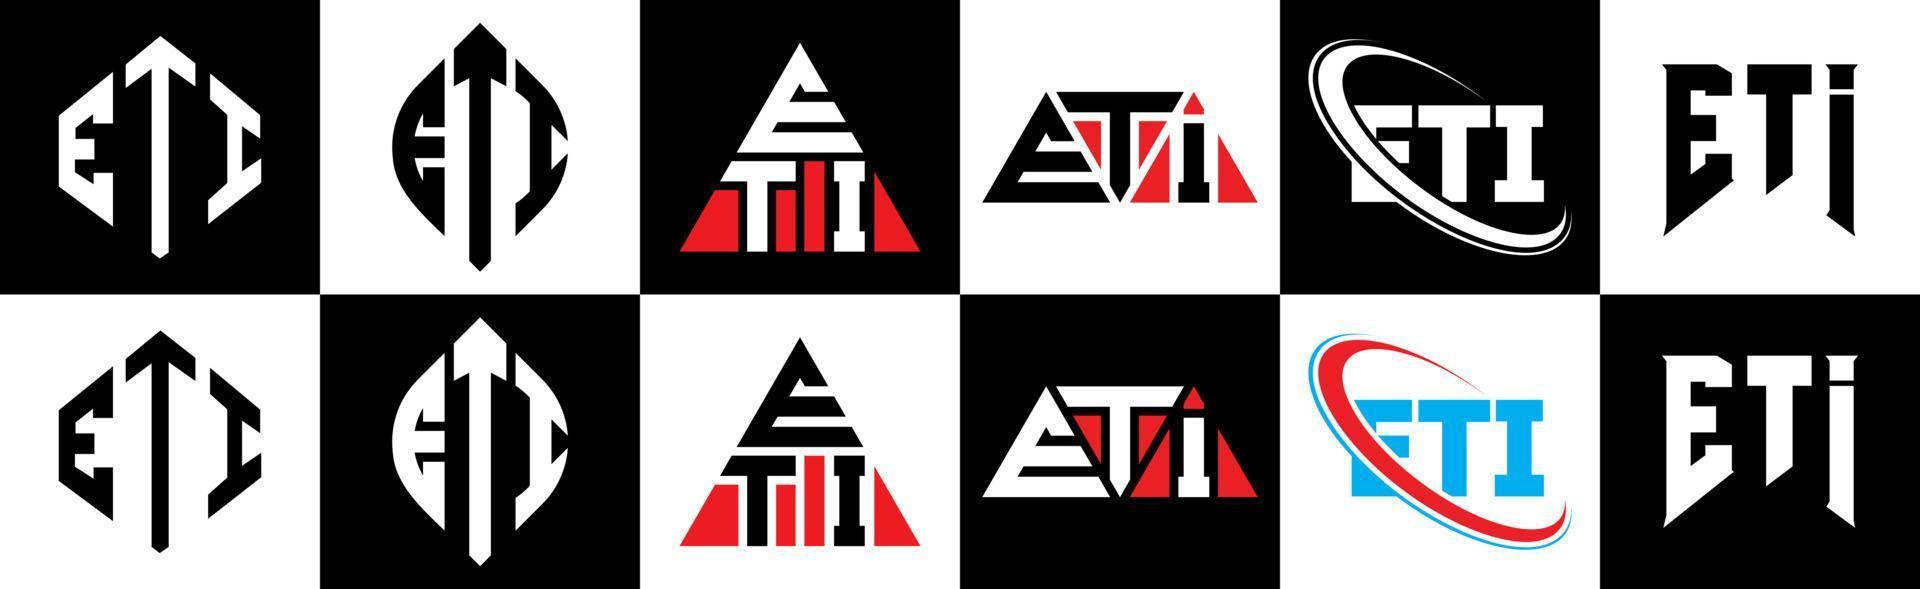 eti-Brief-Logo-Design in sechs Stilen. eti polygon, kreis, dreieck, hexagon, flacher und einfacher stil mit schwarz-weißem buchstabenlogo in einer zeichenfläche. eti minimalistisches und klassisches Logo vektor